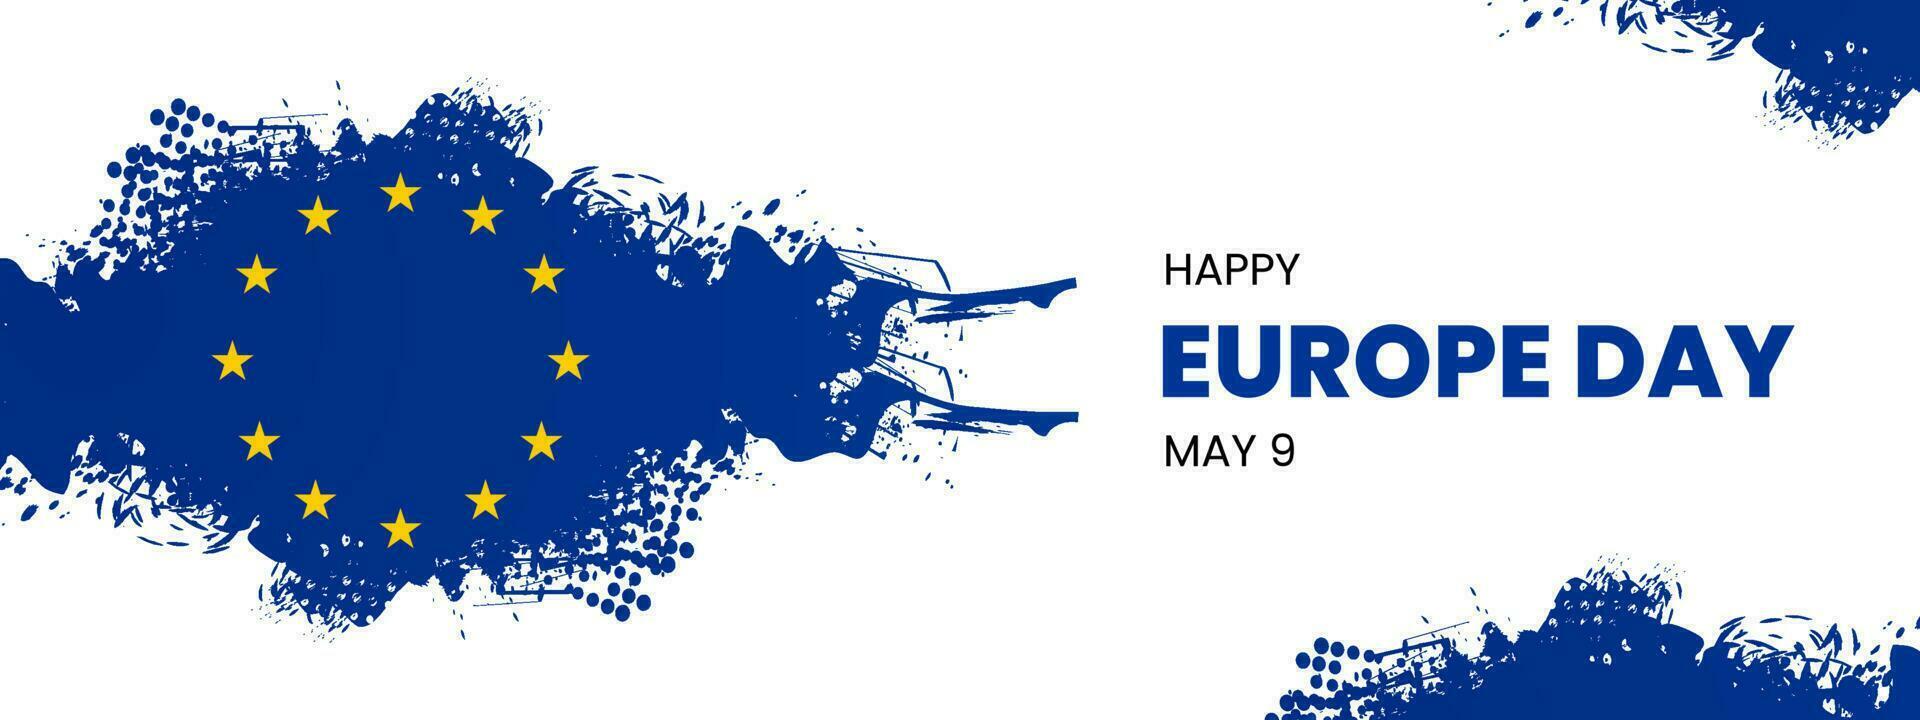 Europa Tag auf kann 9 Vektor Illustration. jährlich Öffentlichkeit Urlaub im dürfen. Feier, Karte, Poster, Logo, Wörter, Text geschrieben auf Blau gemalt Hintergrund. Sieg im Europa Tag.